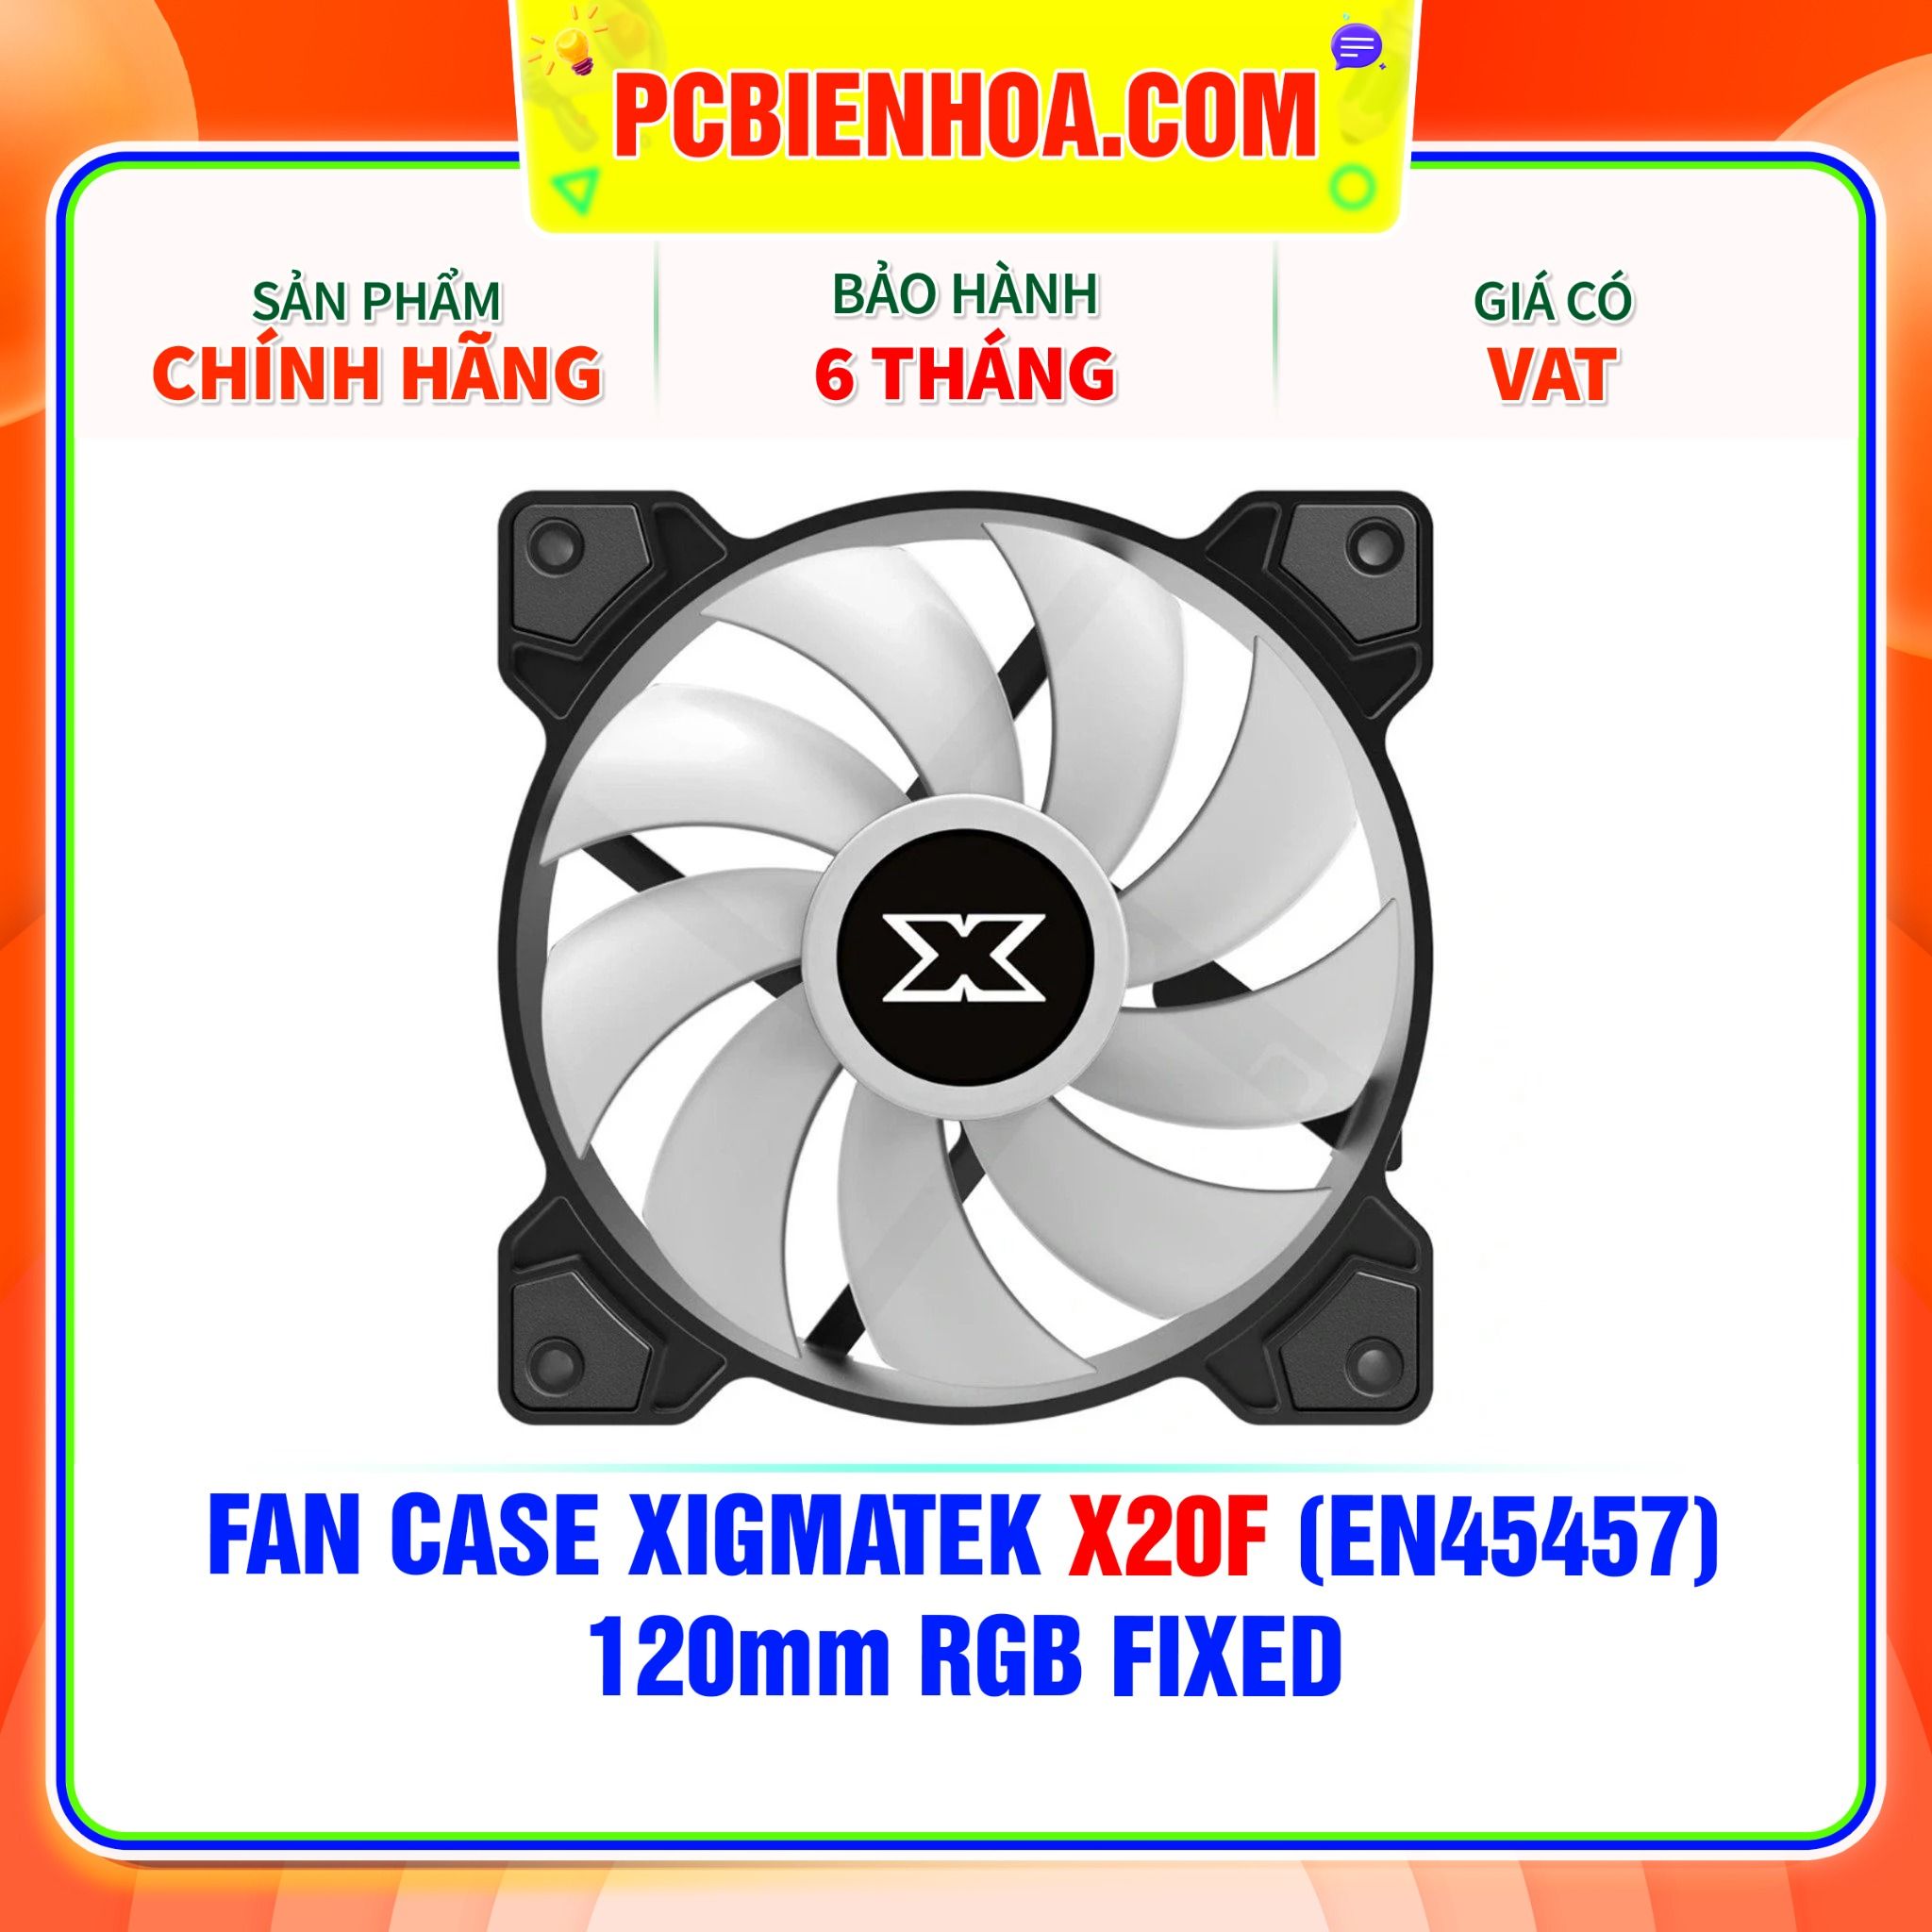  FAN CASE XIGMATEK X20F (EN45457) -120mm RGB FIXED 